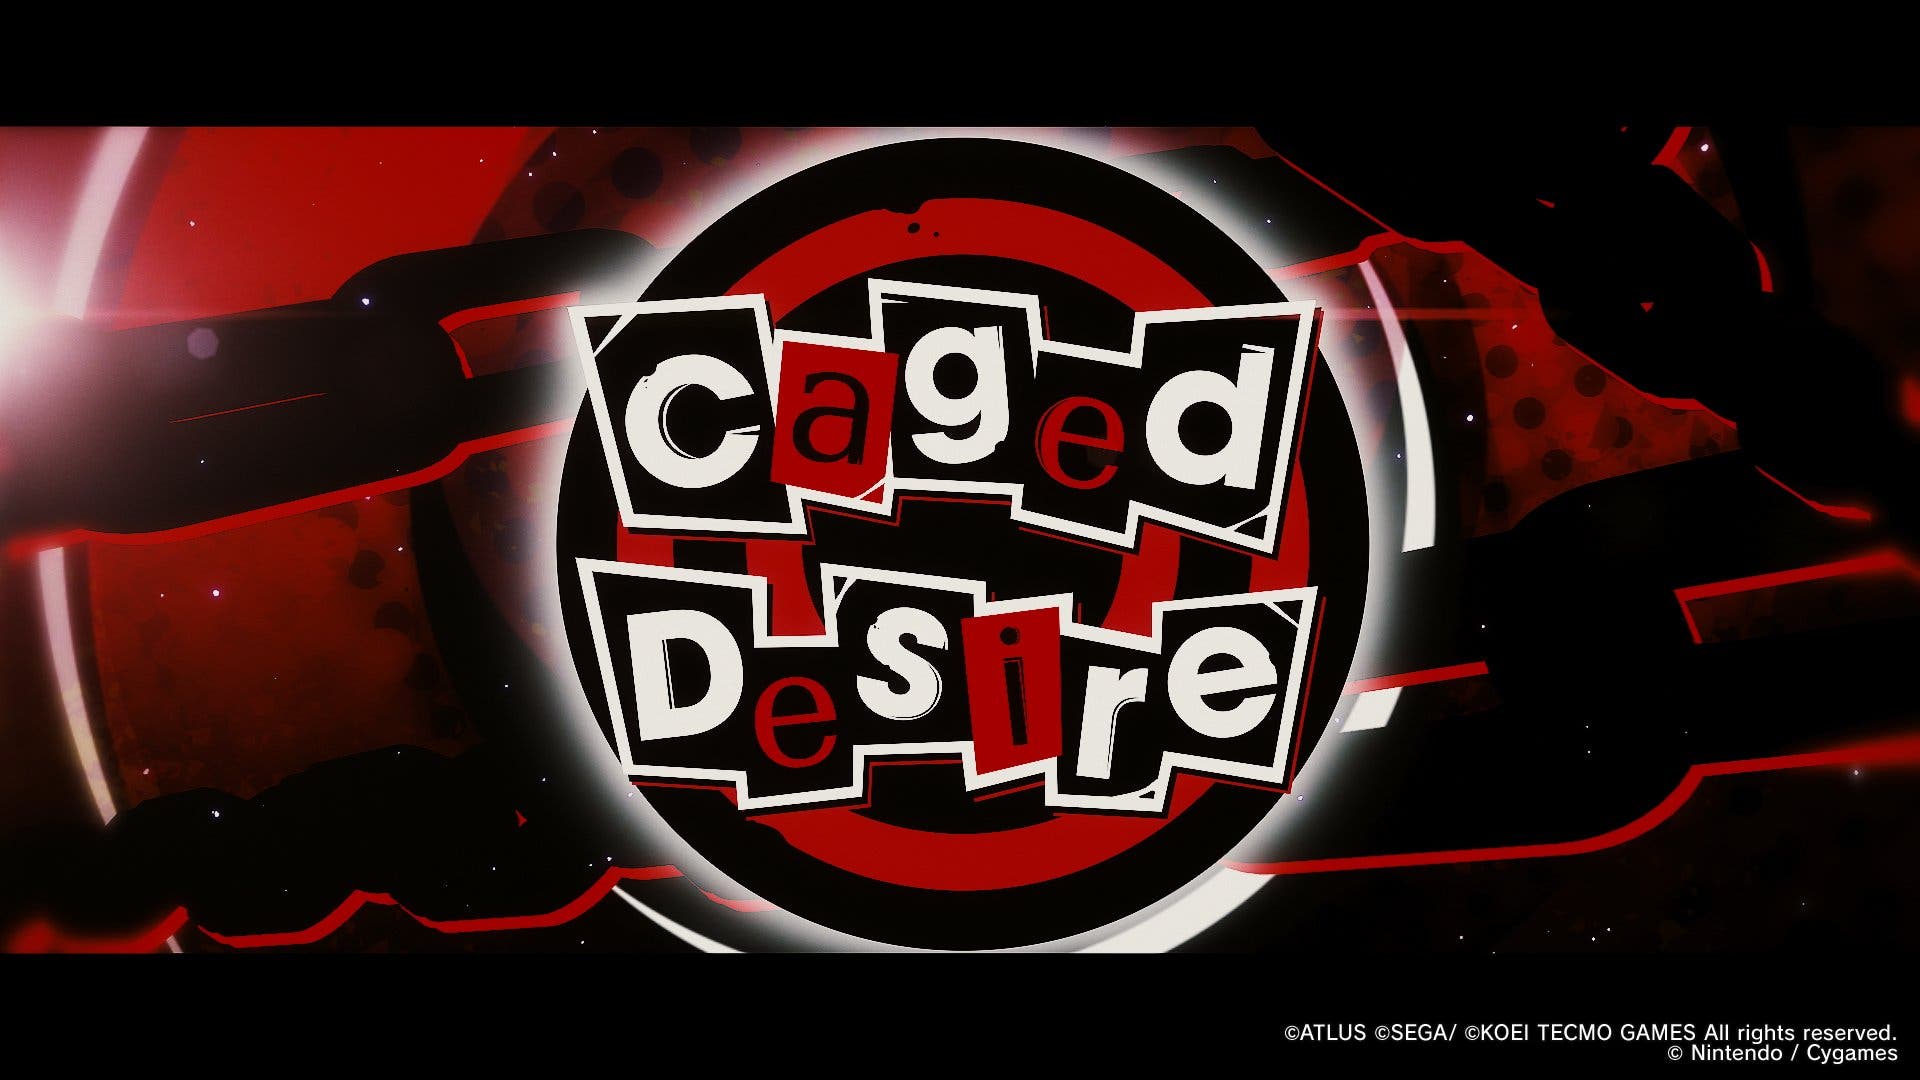 Dragalia Lost confirma oficialmente su colaboración con Persona 5 Strikers con este vídeo